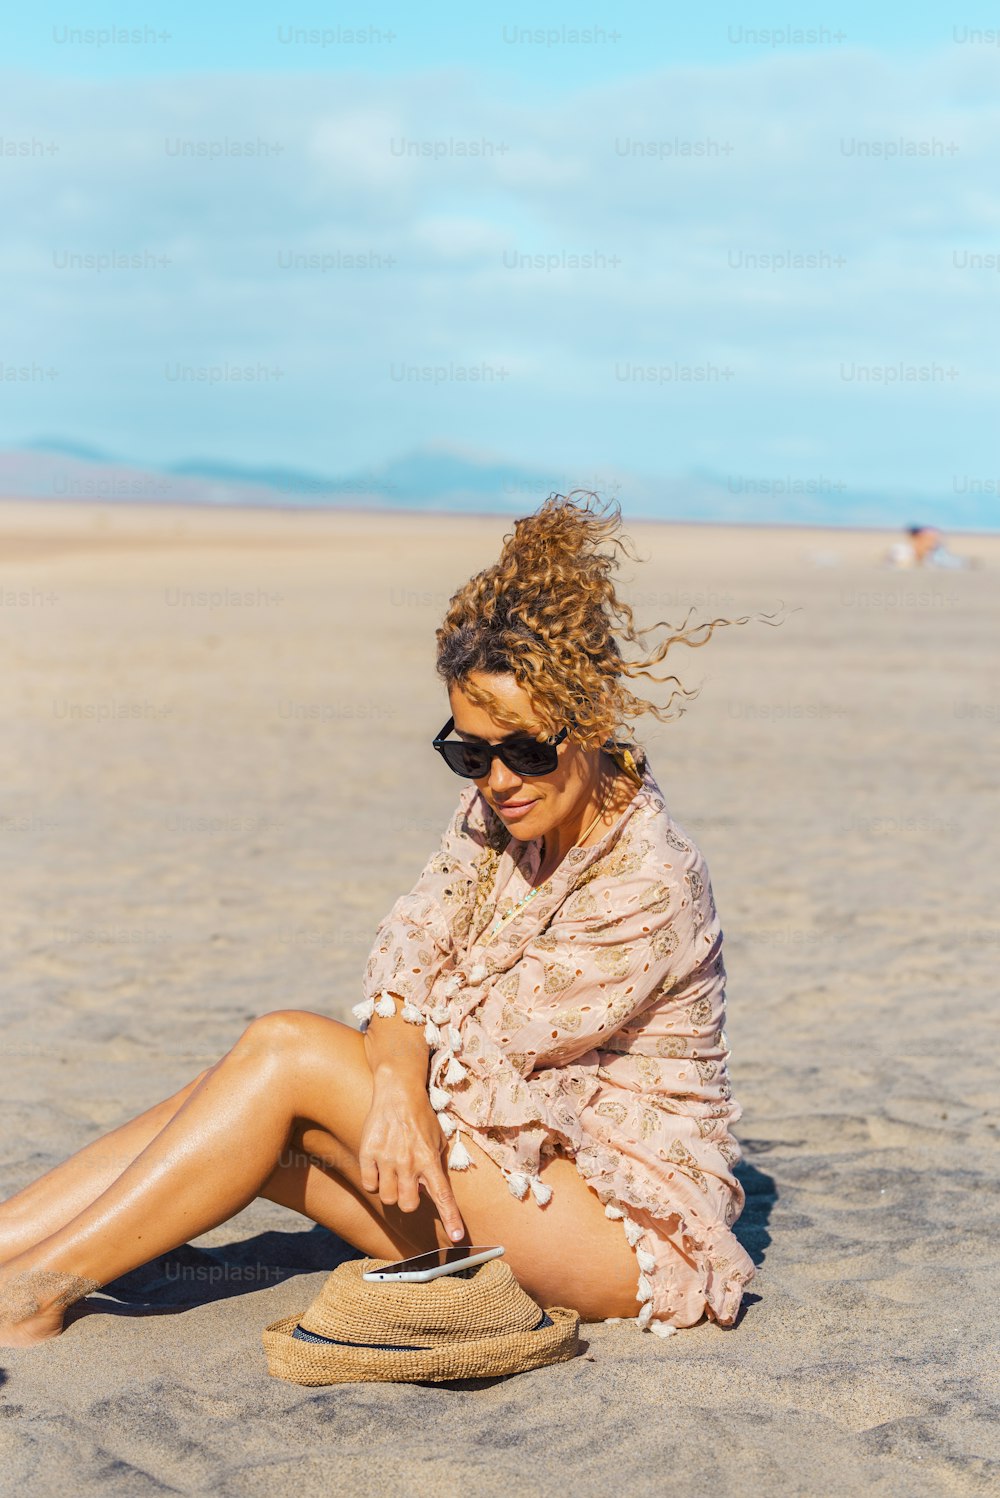 Turista femenina se relaja bajo el sol en el día de vacaciones de verano en la playa usando el teléfono móvil. La mujer adulta atractiva disfruta de la conexión al aire libre. Gratis mujer soltera en solitario personas en actividad turística